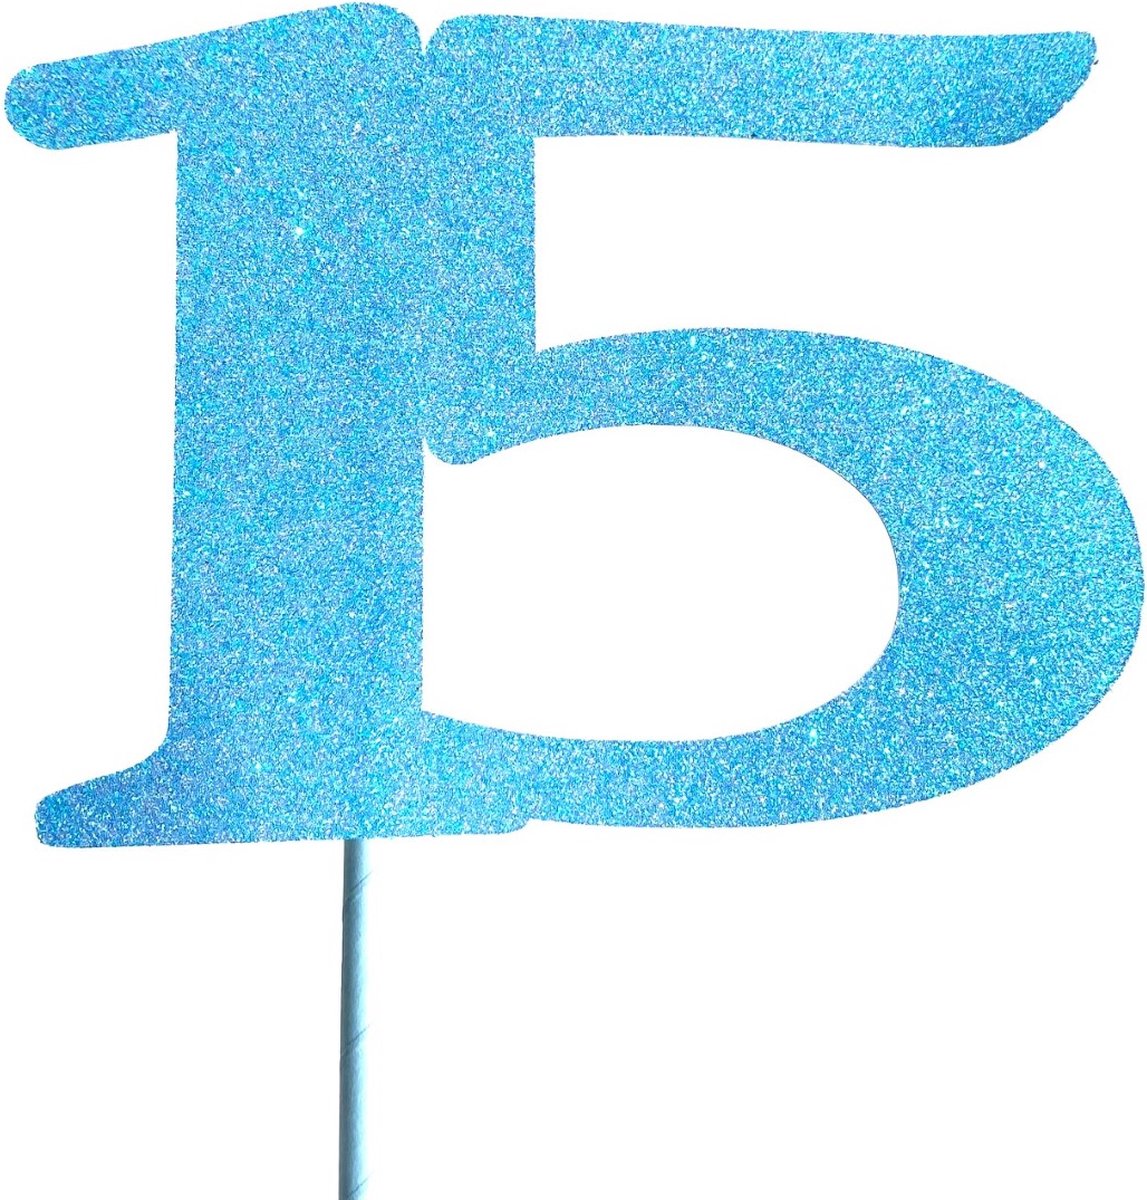 Taartdecoratie versiering| Taarttopper| Cake topper | Taartversiering| Verjaardag| Cijfers | 15 | Blauw glitter|14 cm| karton